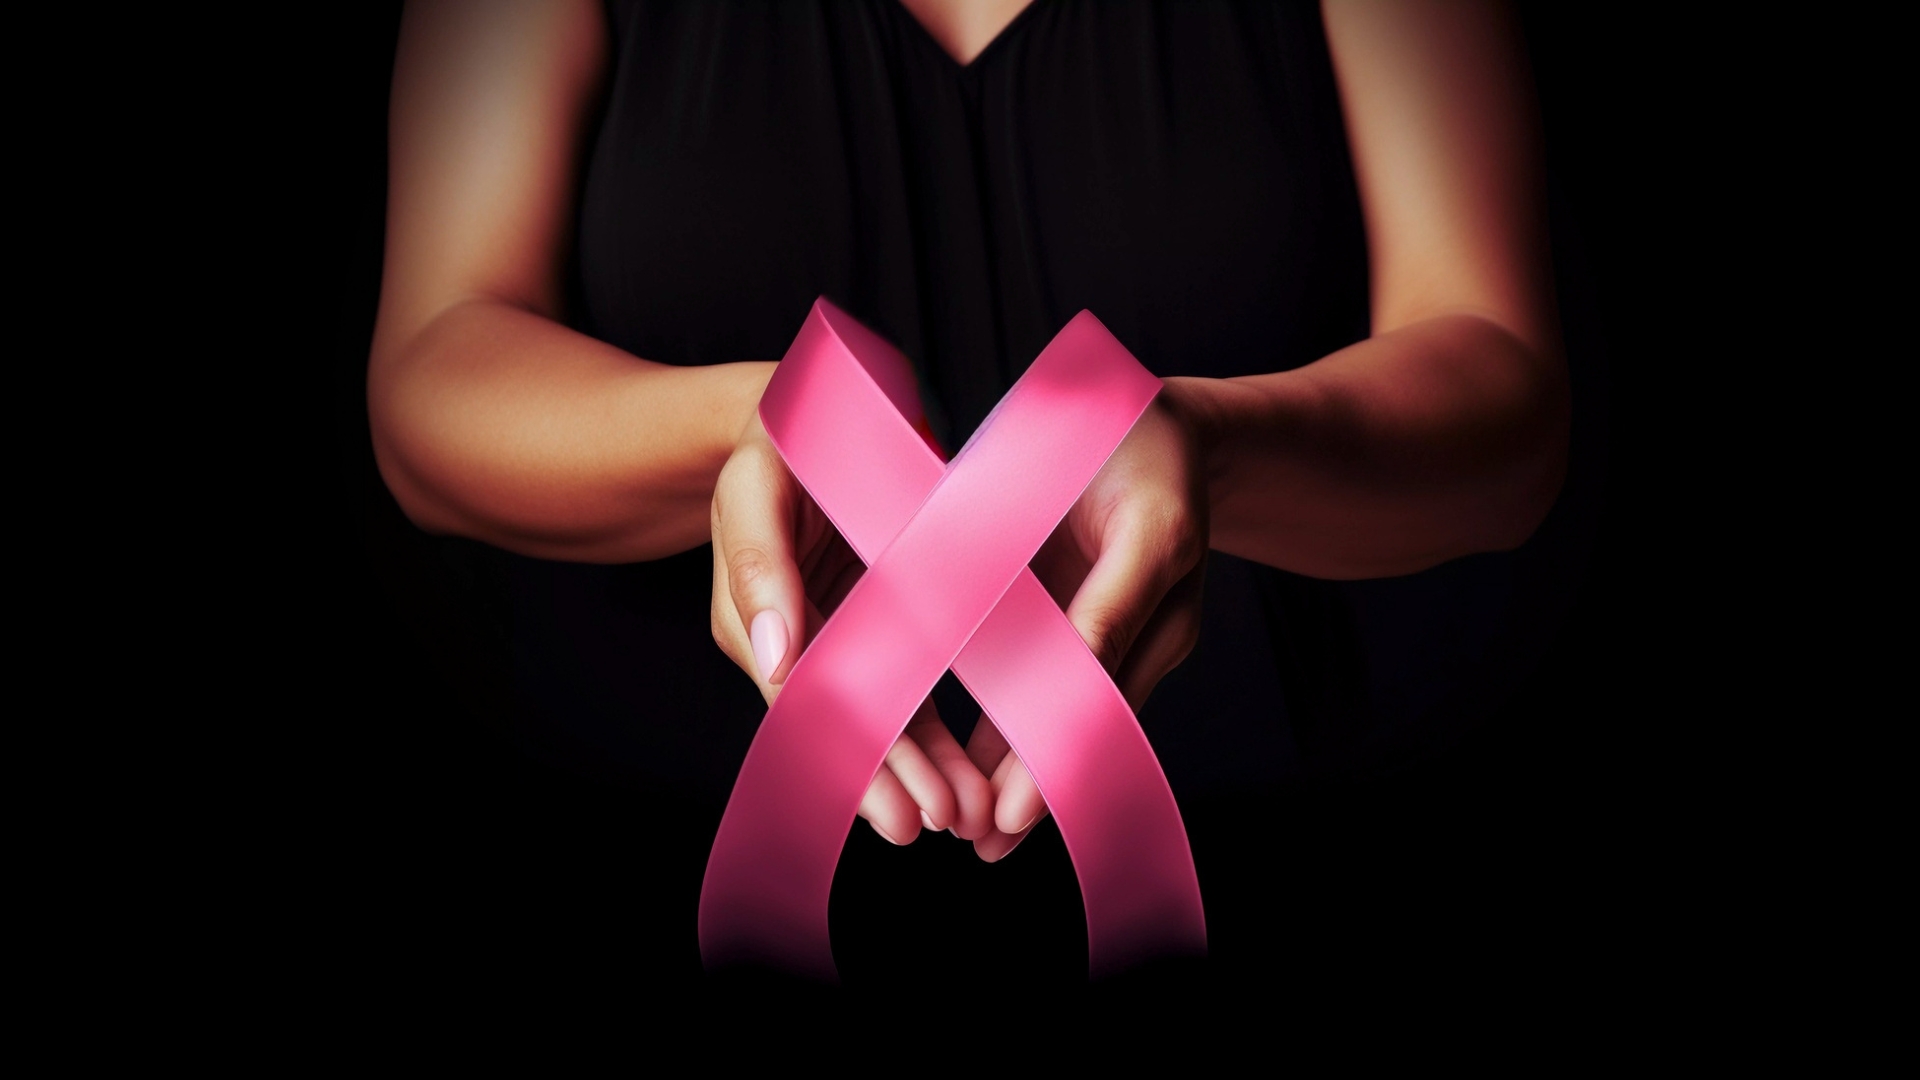 PregAmie cervical cancer